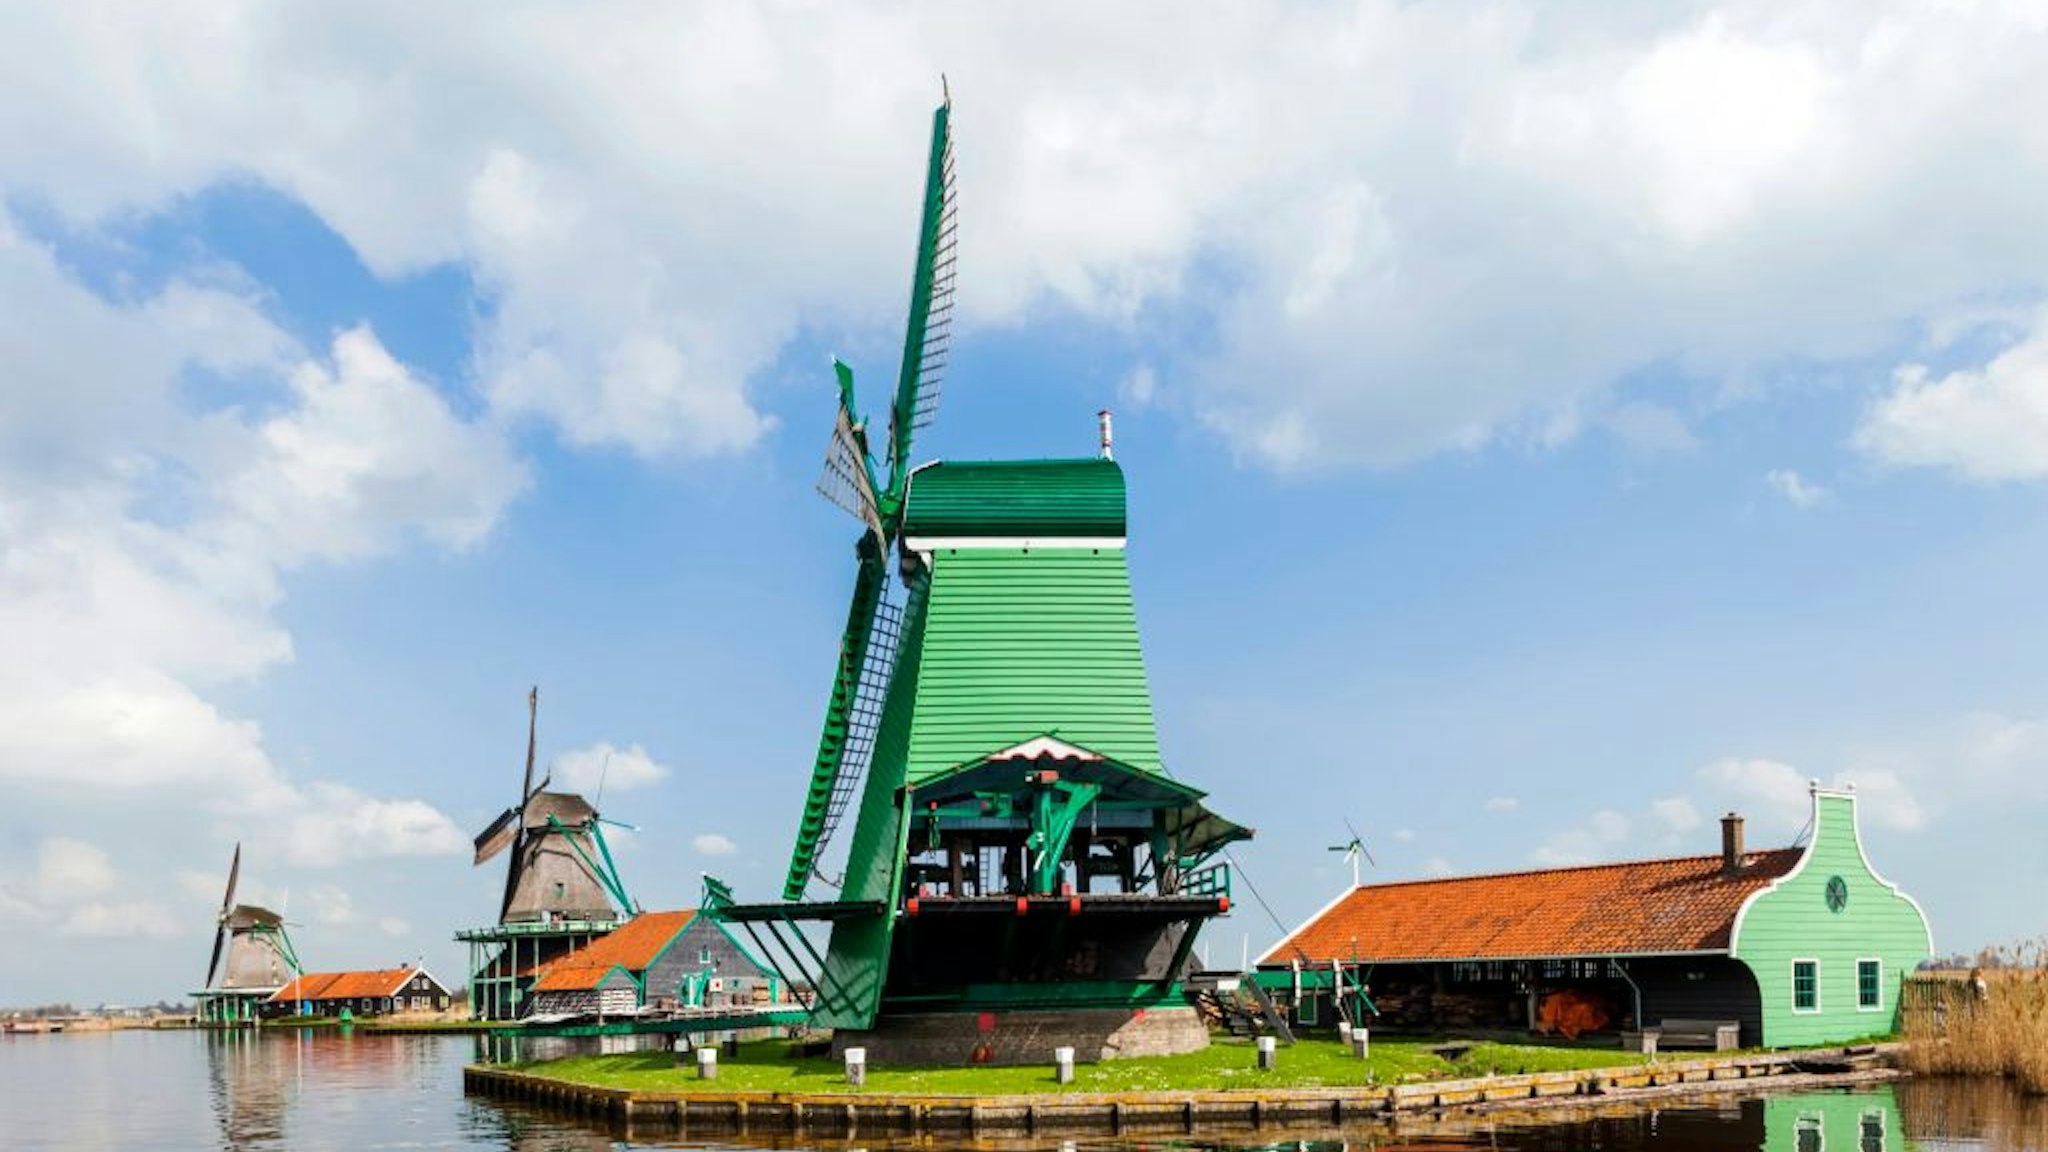 Europe, Netherlands, Zaandam, Zaanse Schans, Windmills